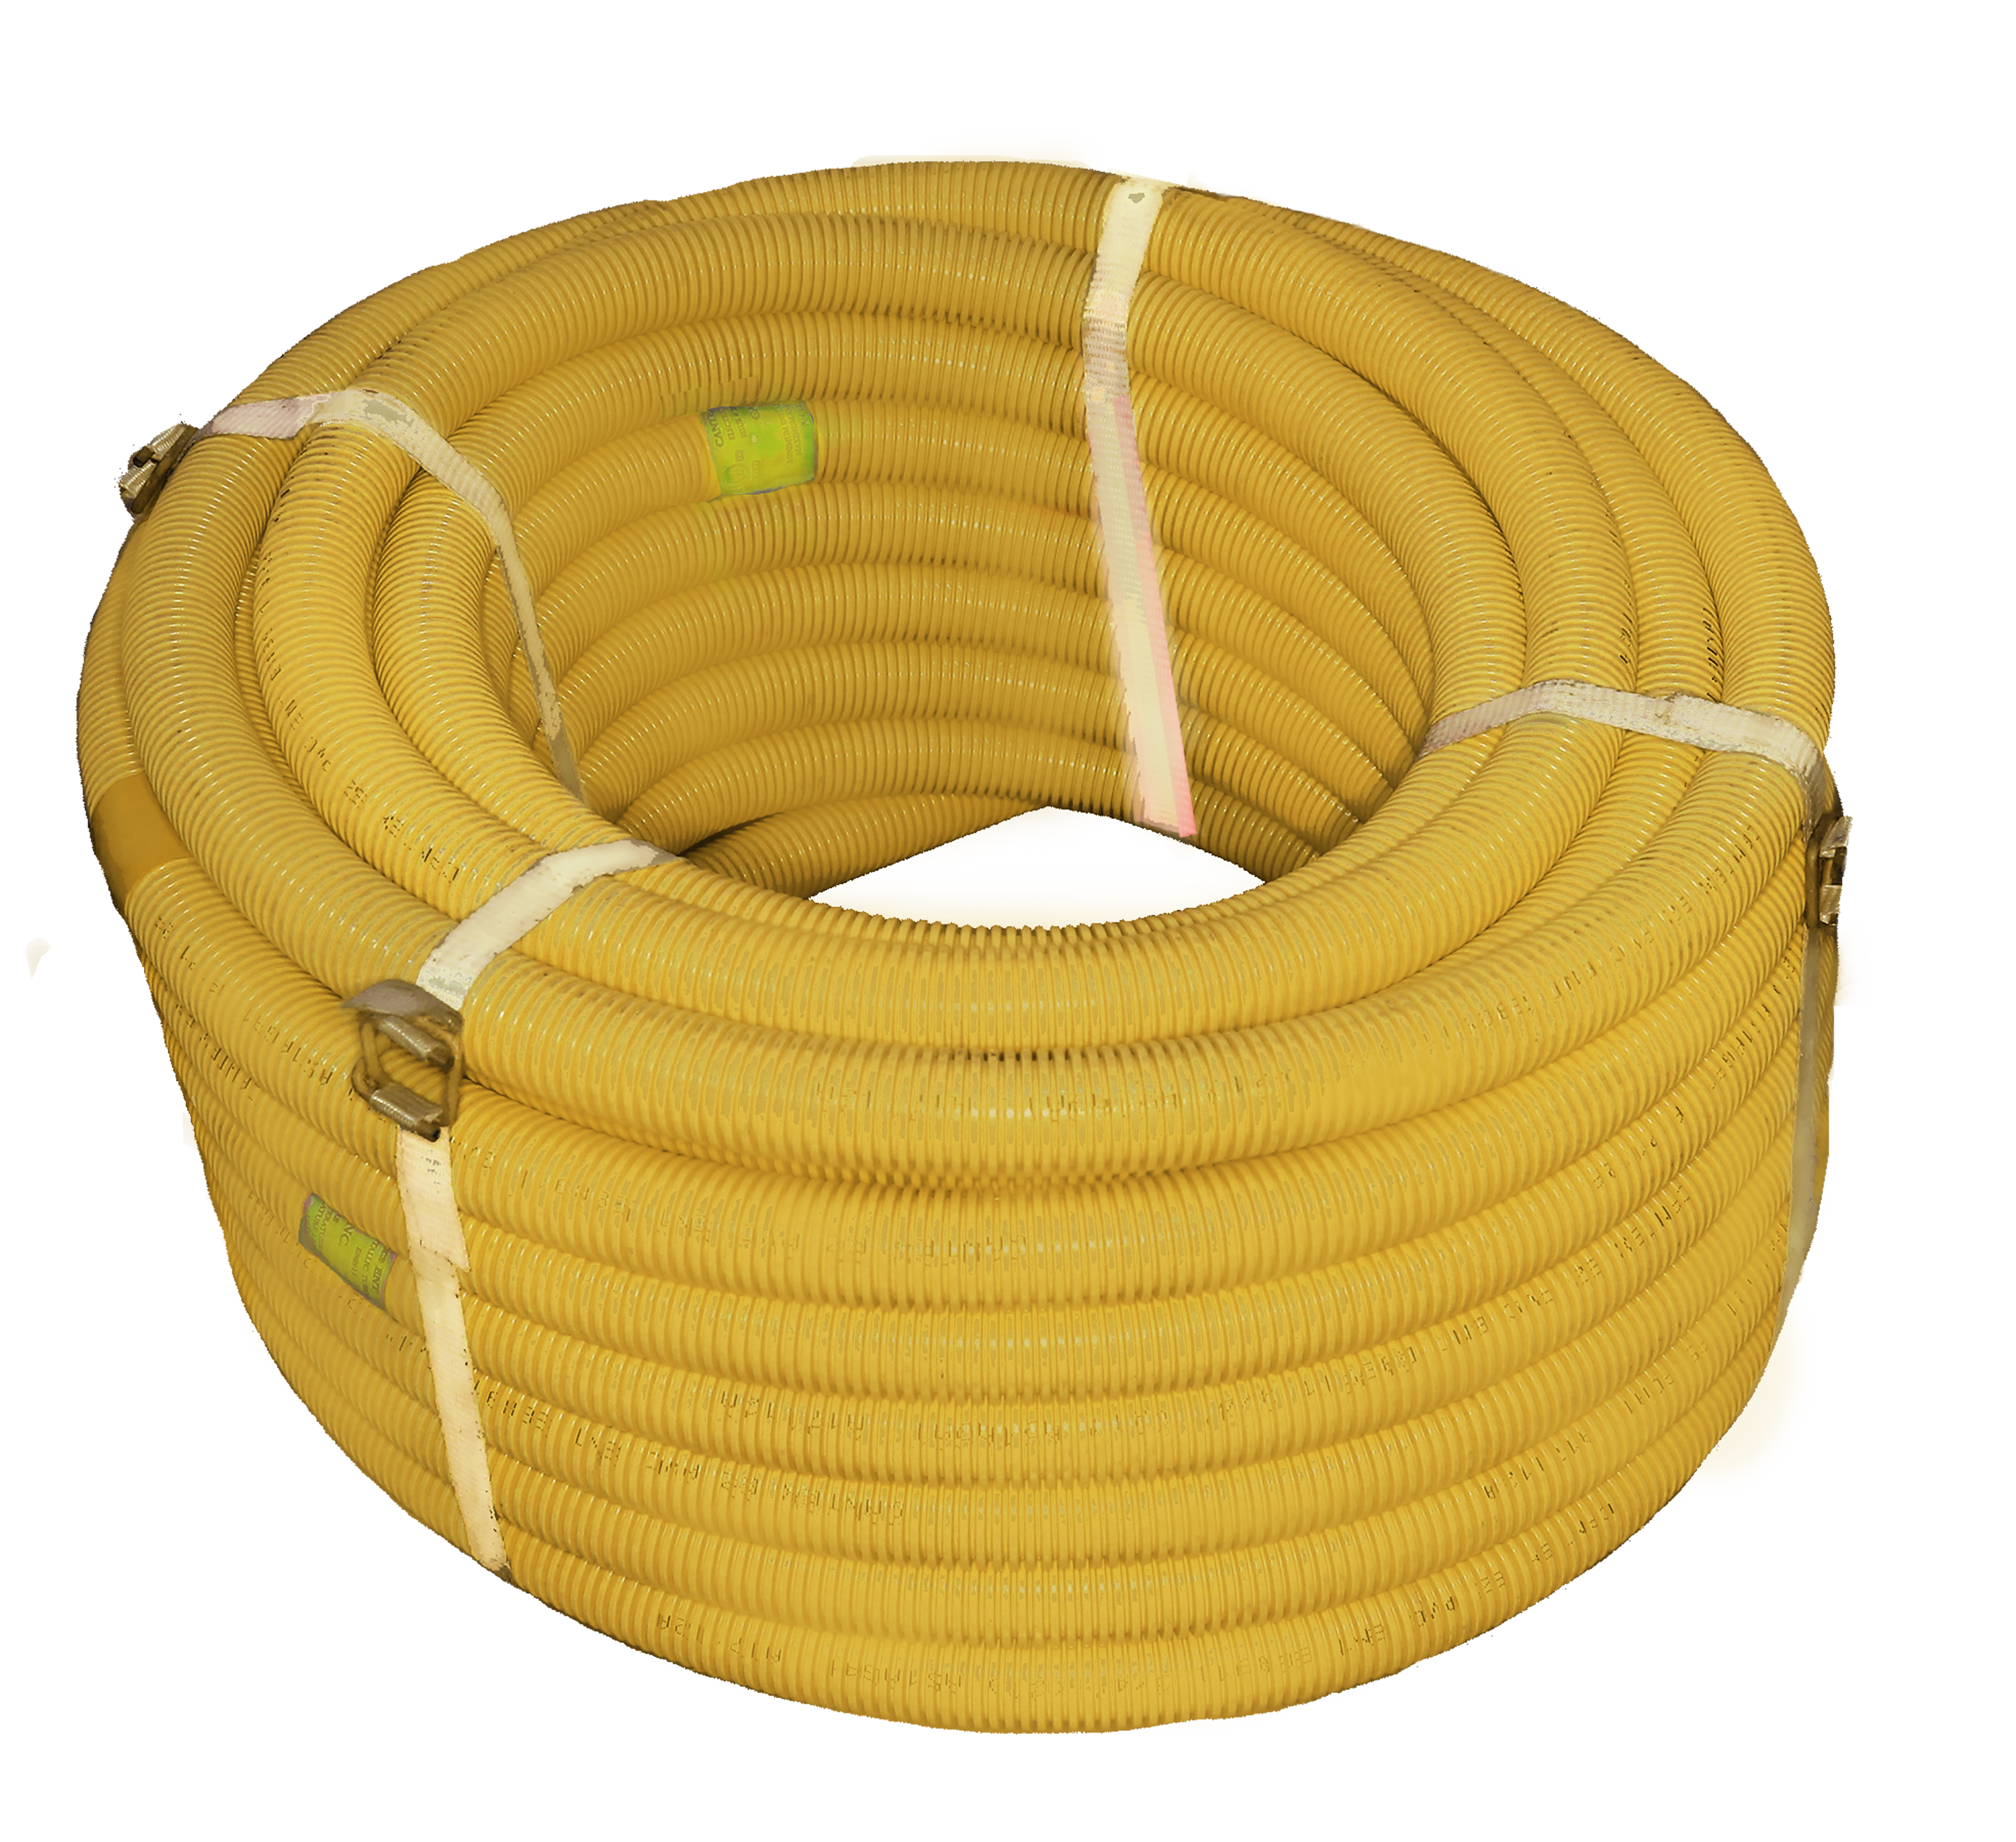 1 in. x 100 ft. coilYellow EZ-Flex Flexible ENT Electrical Nonmetallic Tubing